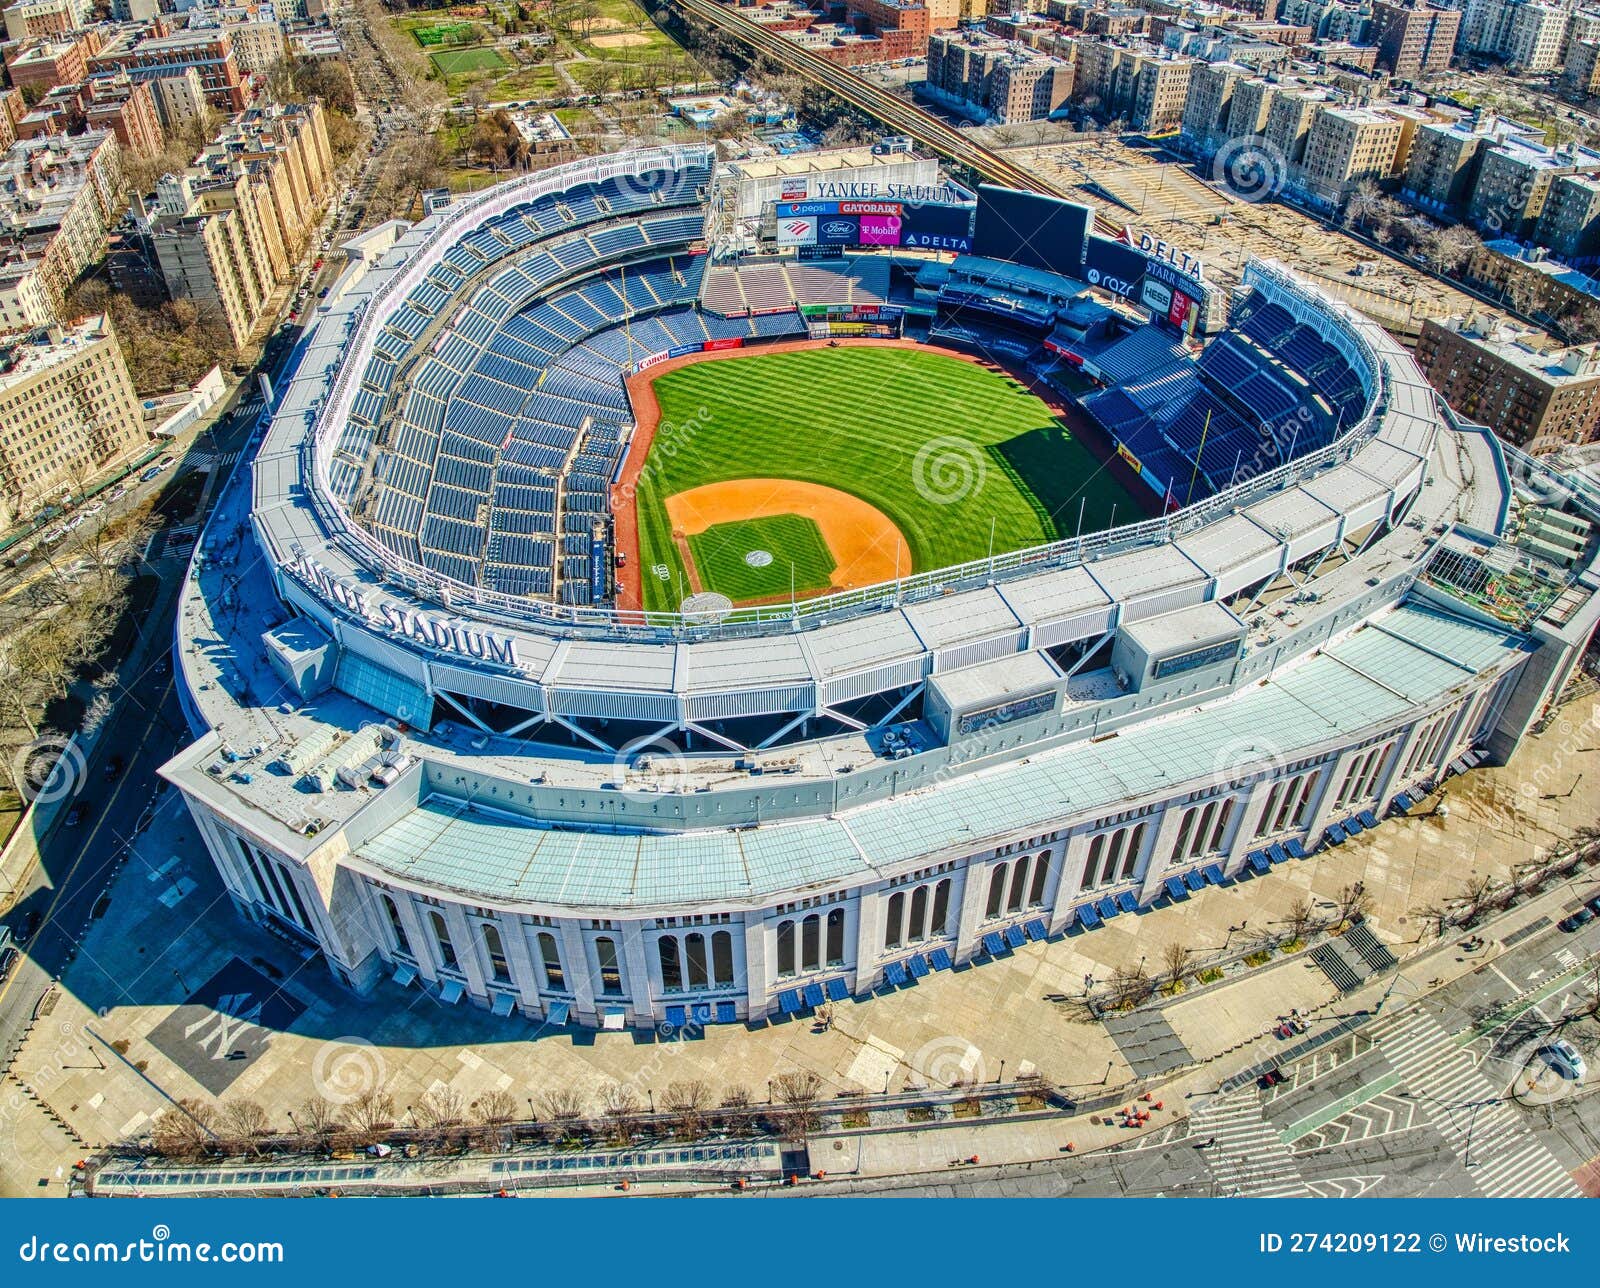 Aerial View of Iconic Yankee Stadium in Bronx, New York City, US